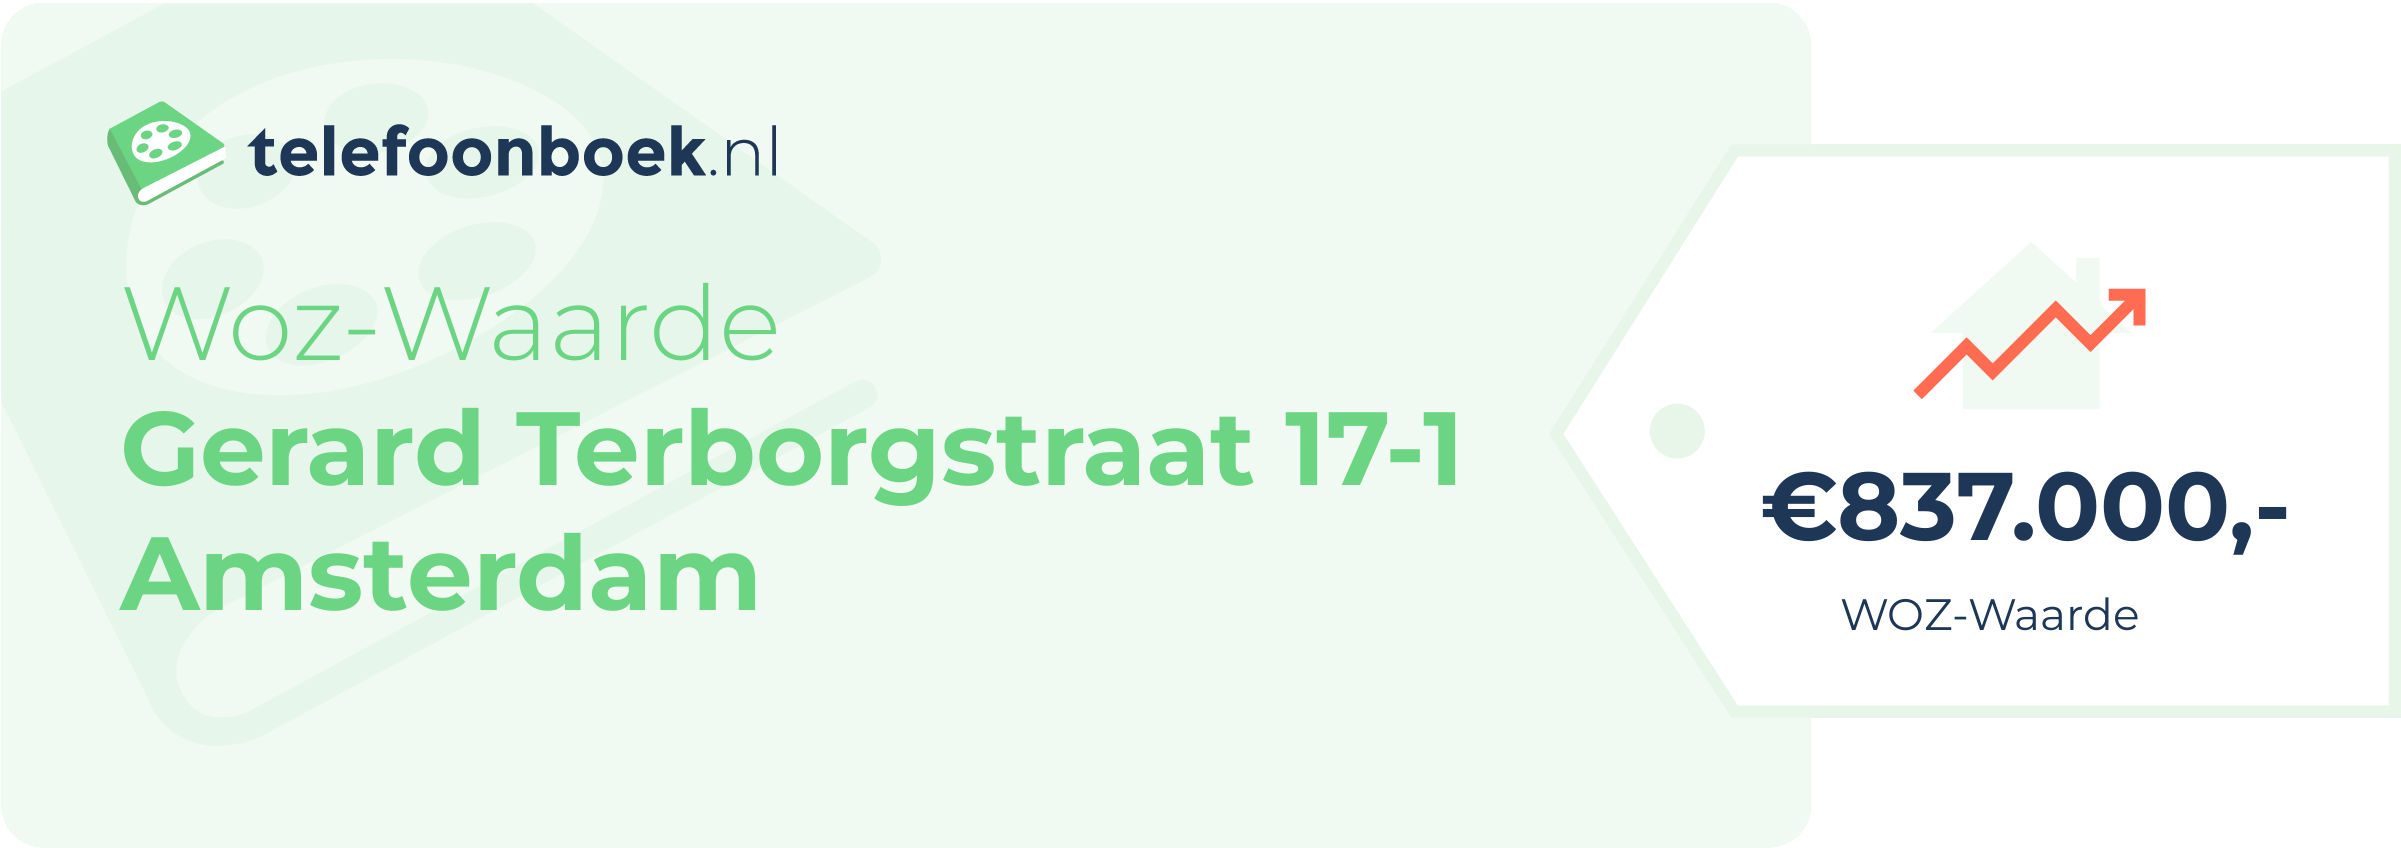 WOZ-waarde Gerard Terborgstraat 17-1 Amsterdam